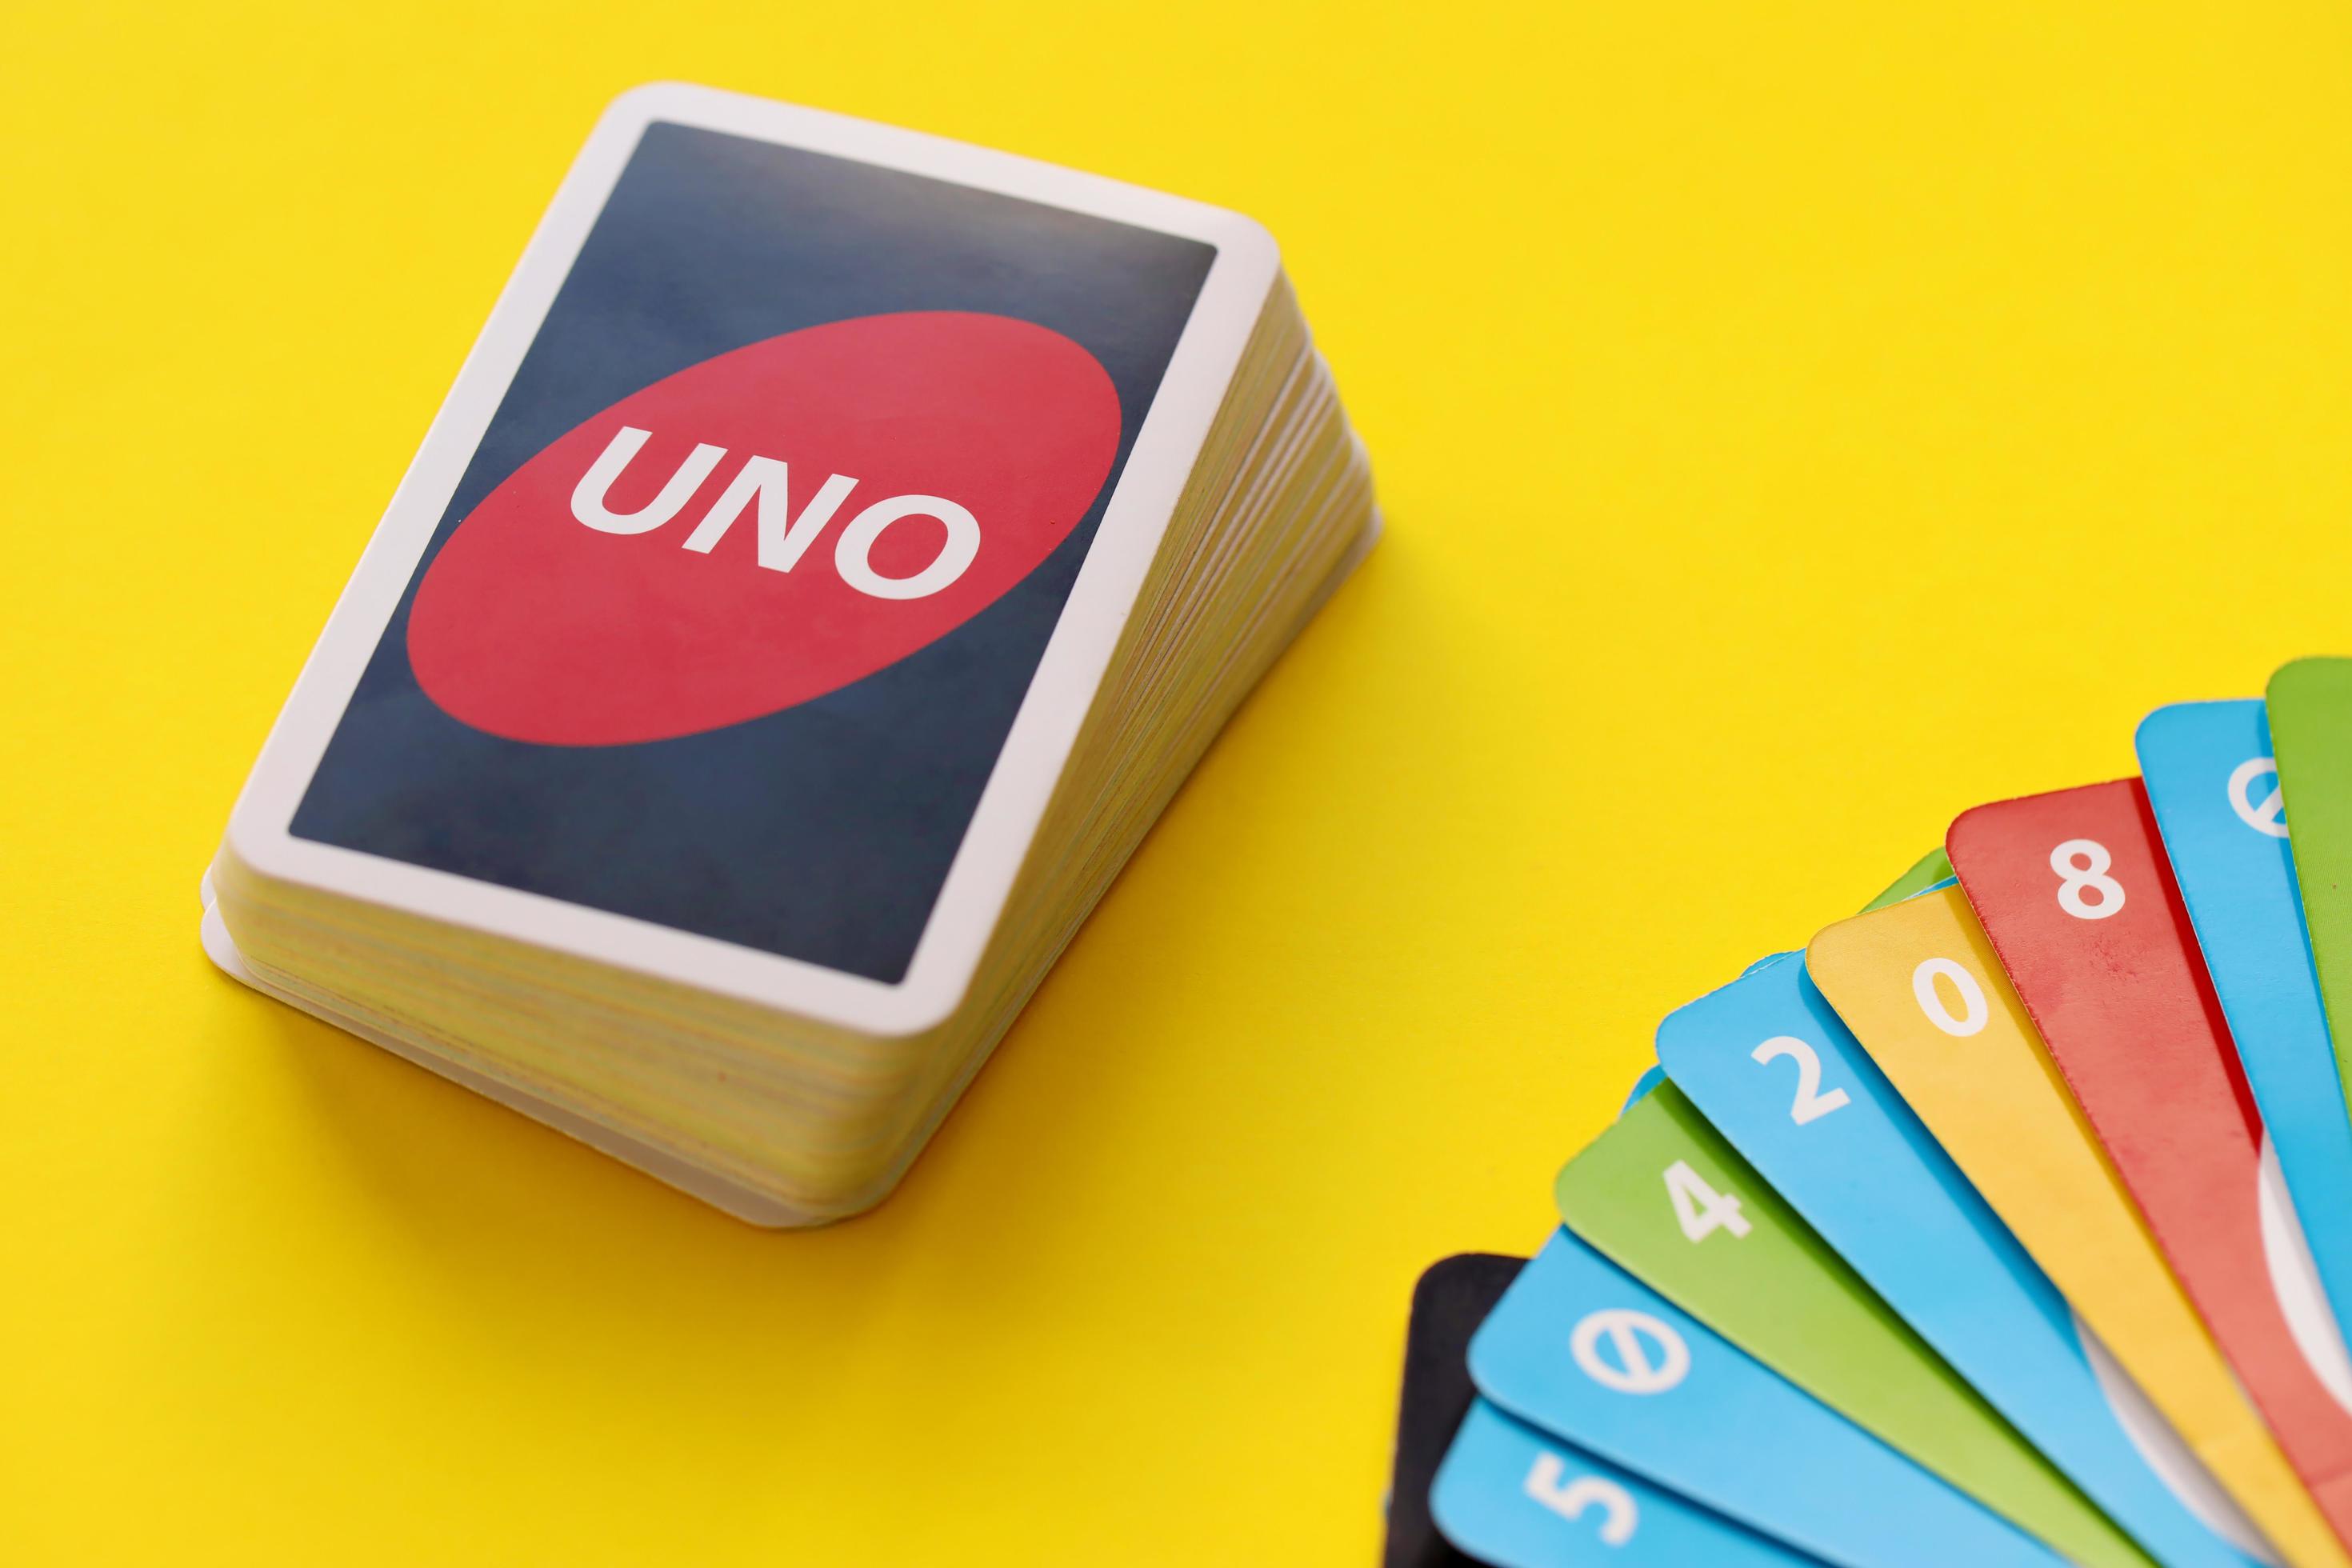 Màu sắc tươi sáng và đa dạng của bộ bài Uno sẽ làm bạn phấn khích ngay từ lần chơi đầu tiên! Cùng nhau tận hưởng những giây phút giải trí tuyệt vời và thưởng thức cái nhìn của bộ bài Uno độc đáo.